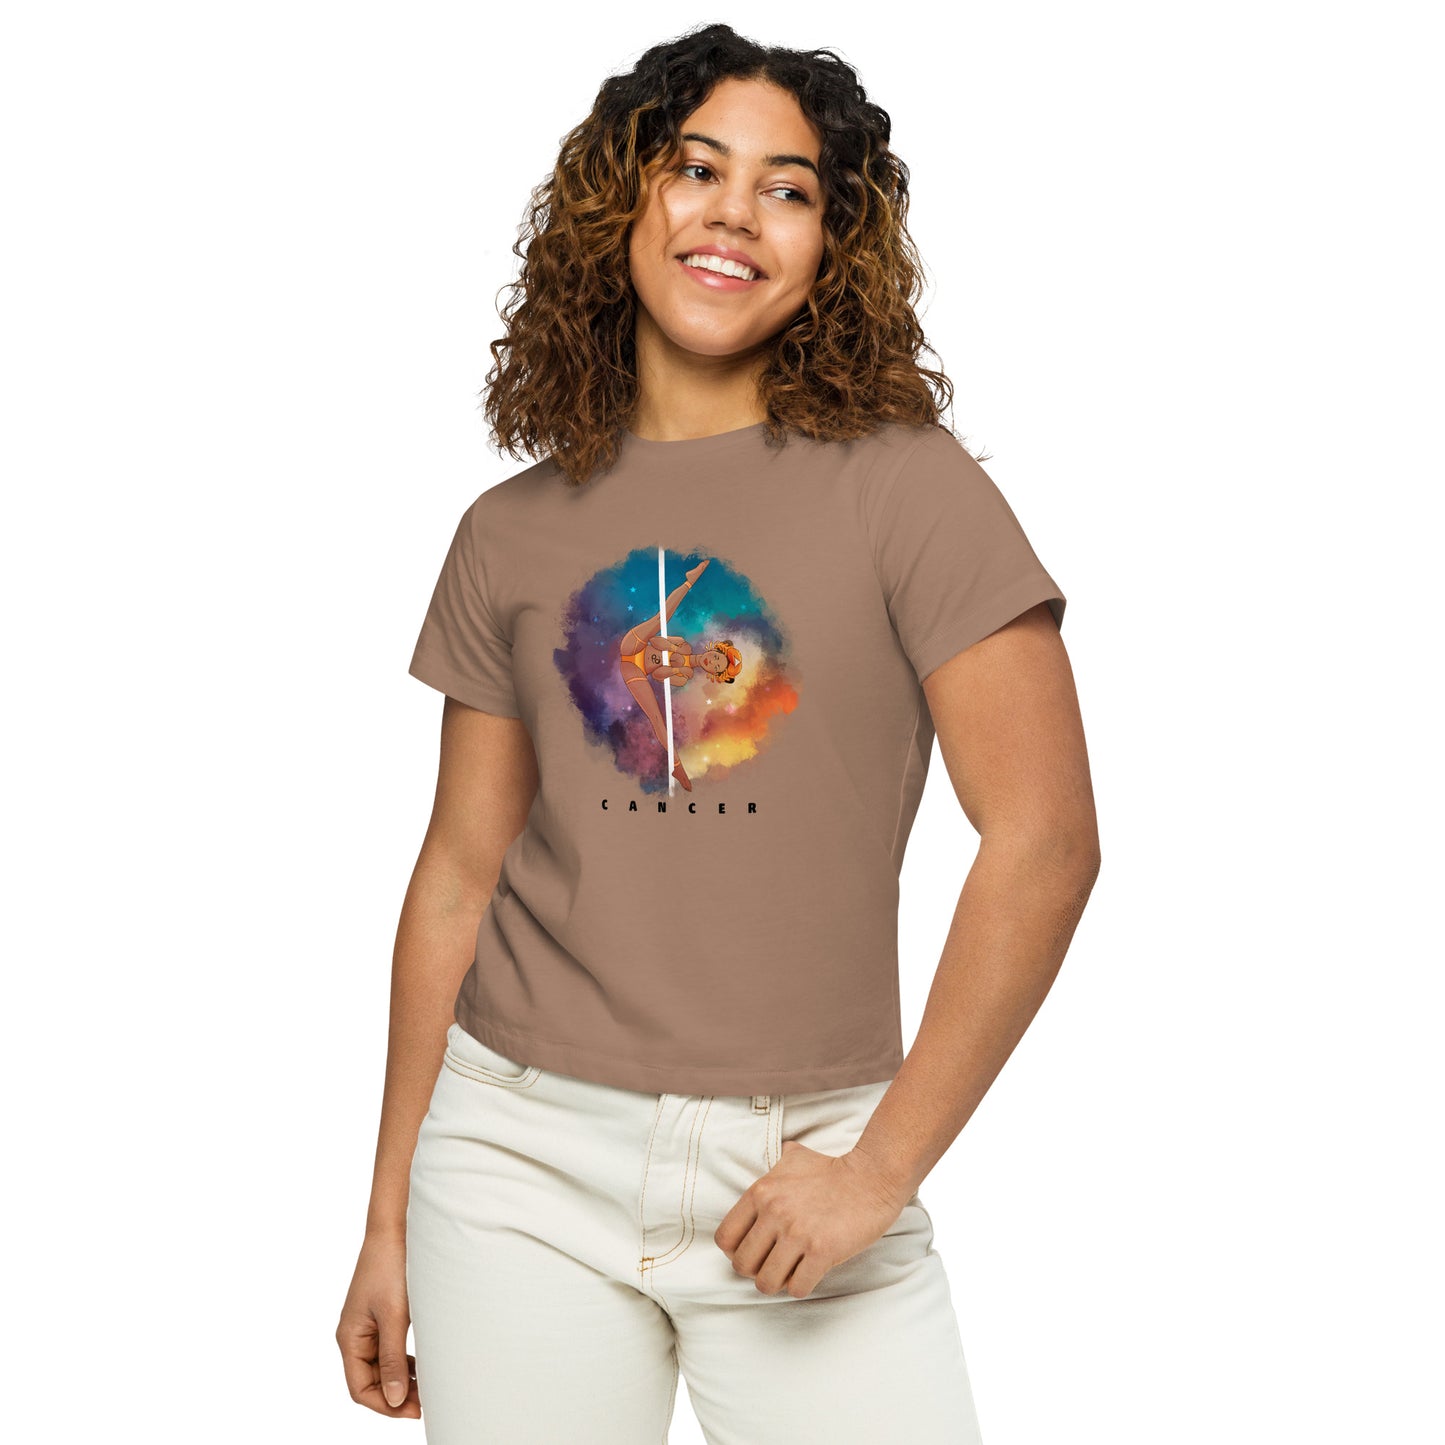 Cancer - Women’s high-waisted t-shirt